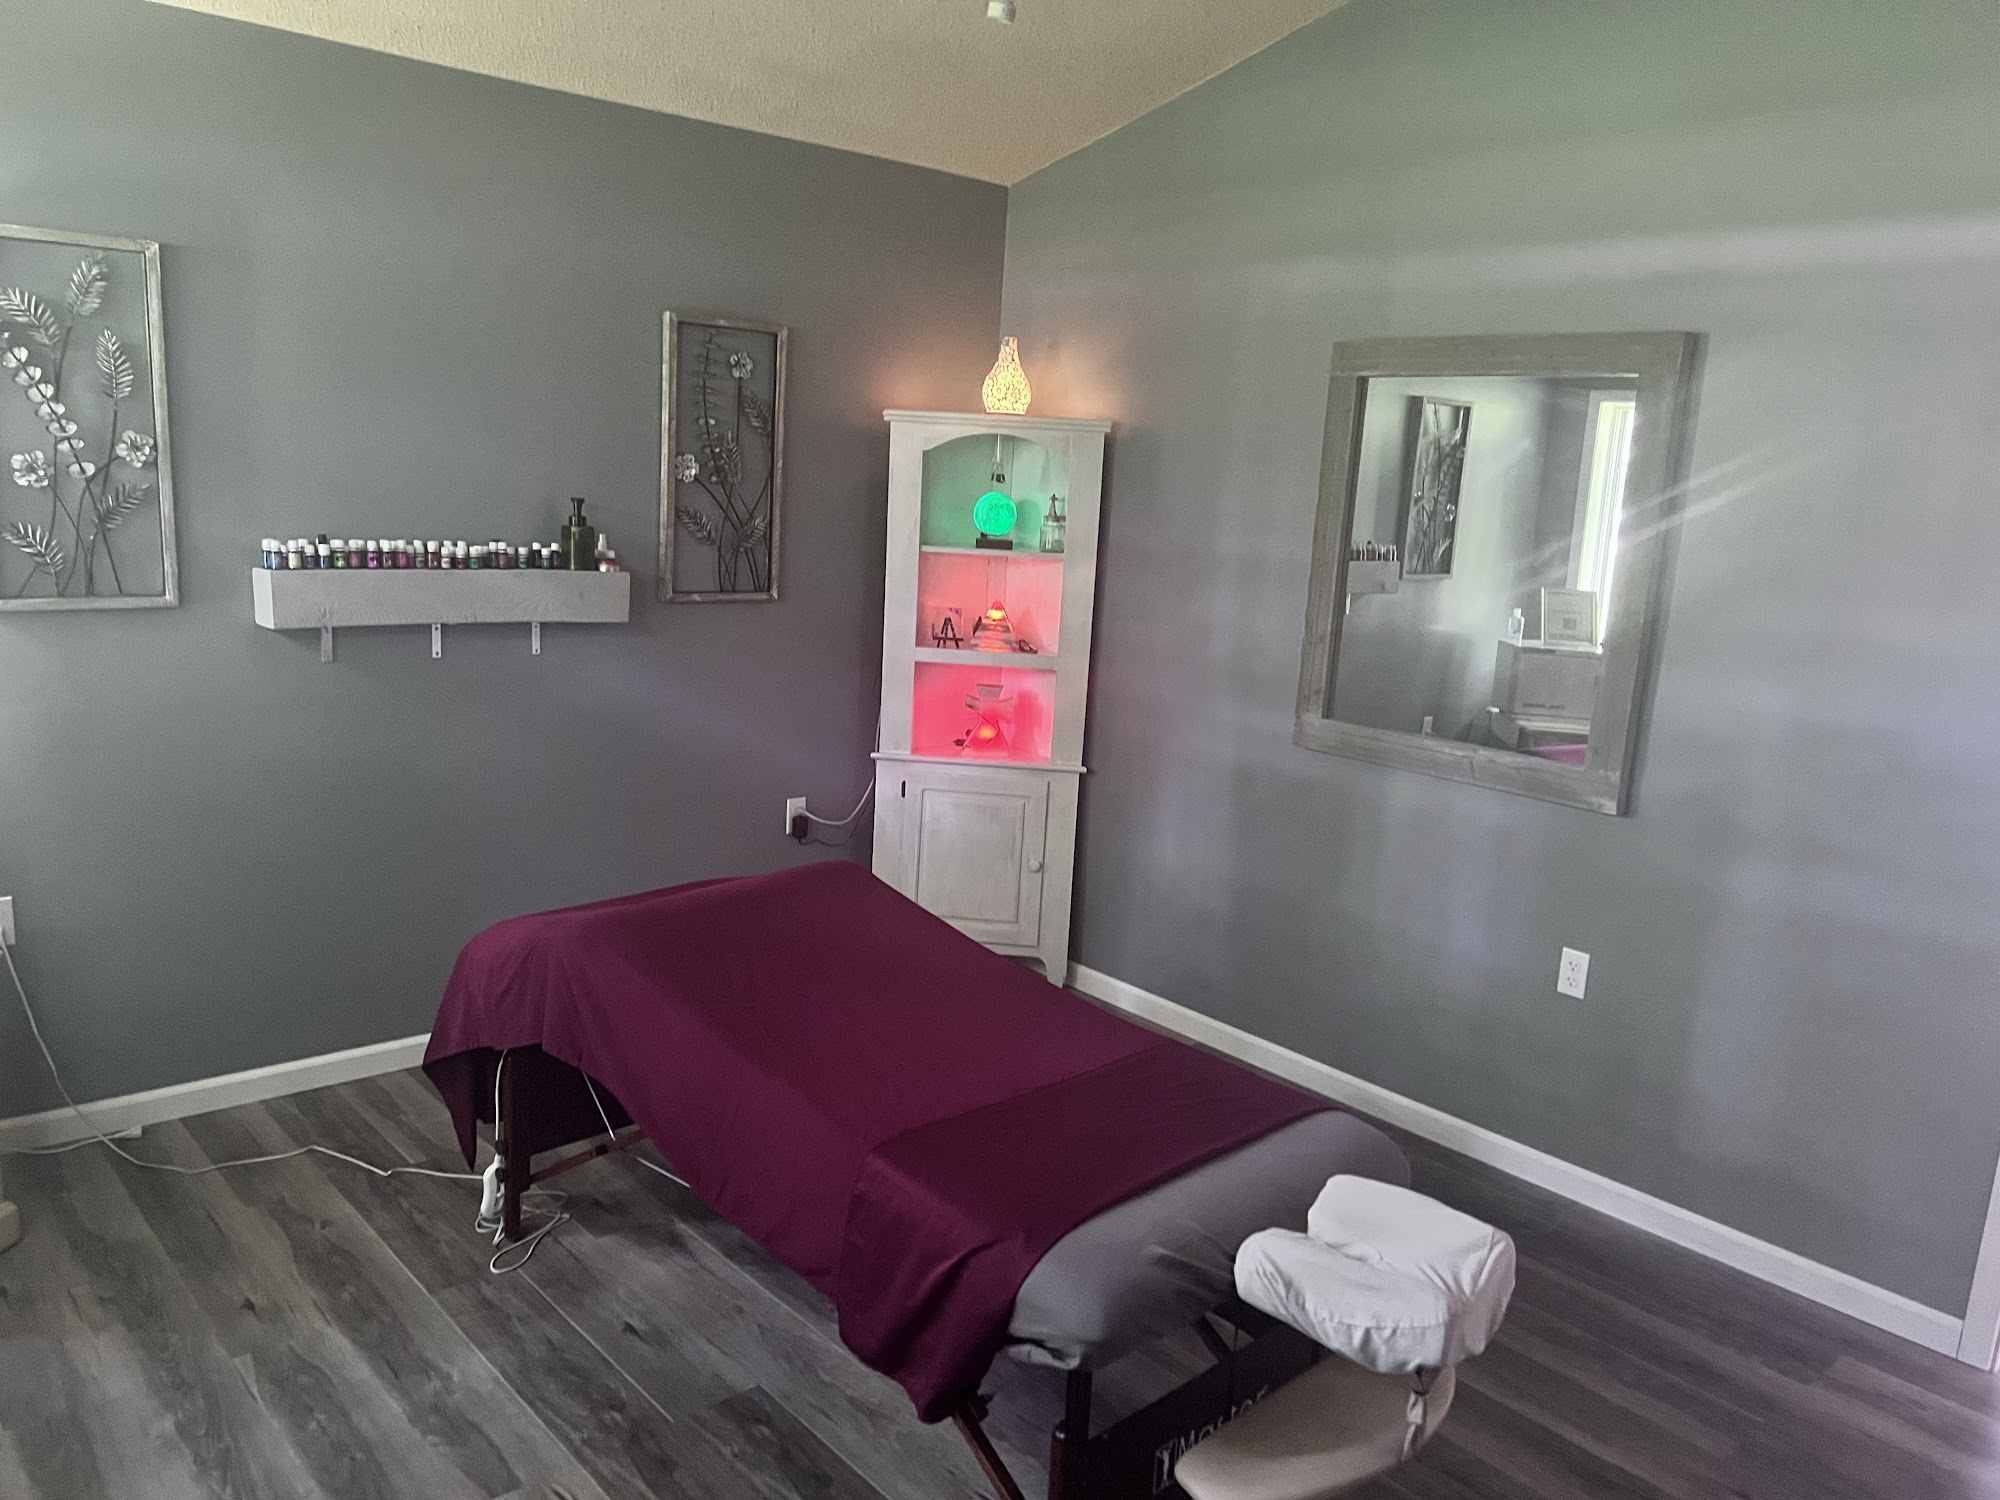 A+ Therapeutic Massage LLC